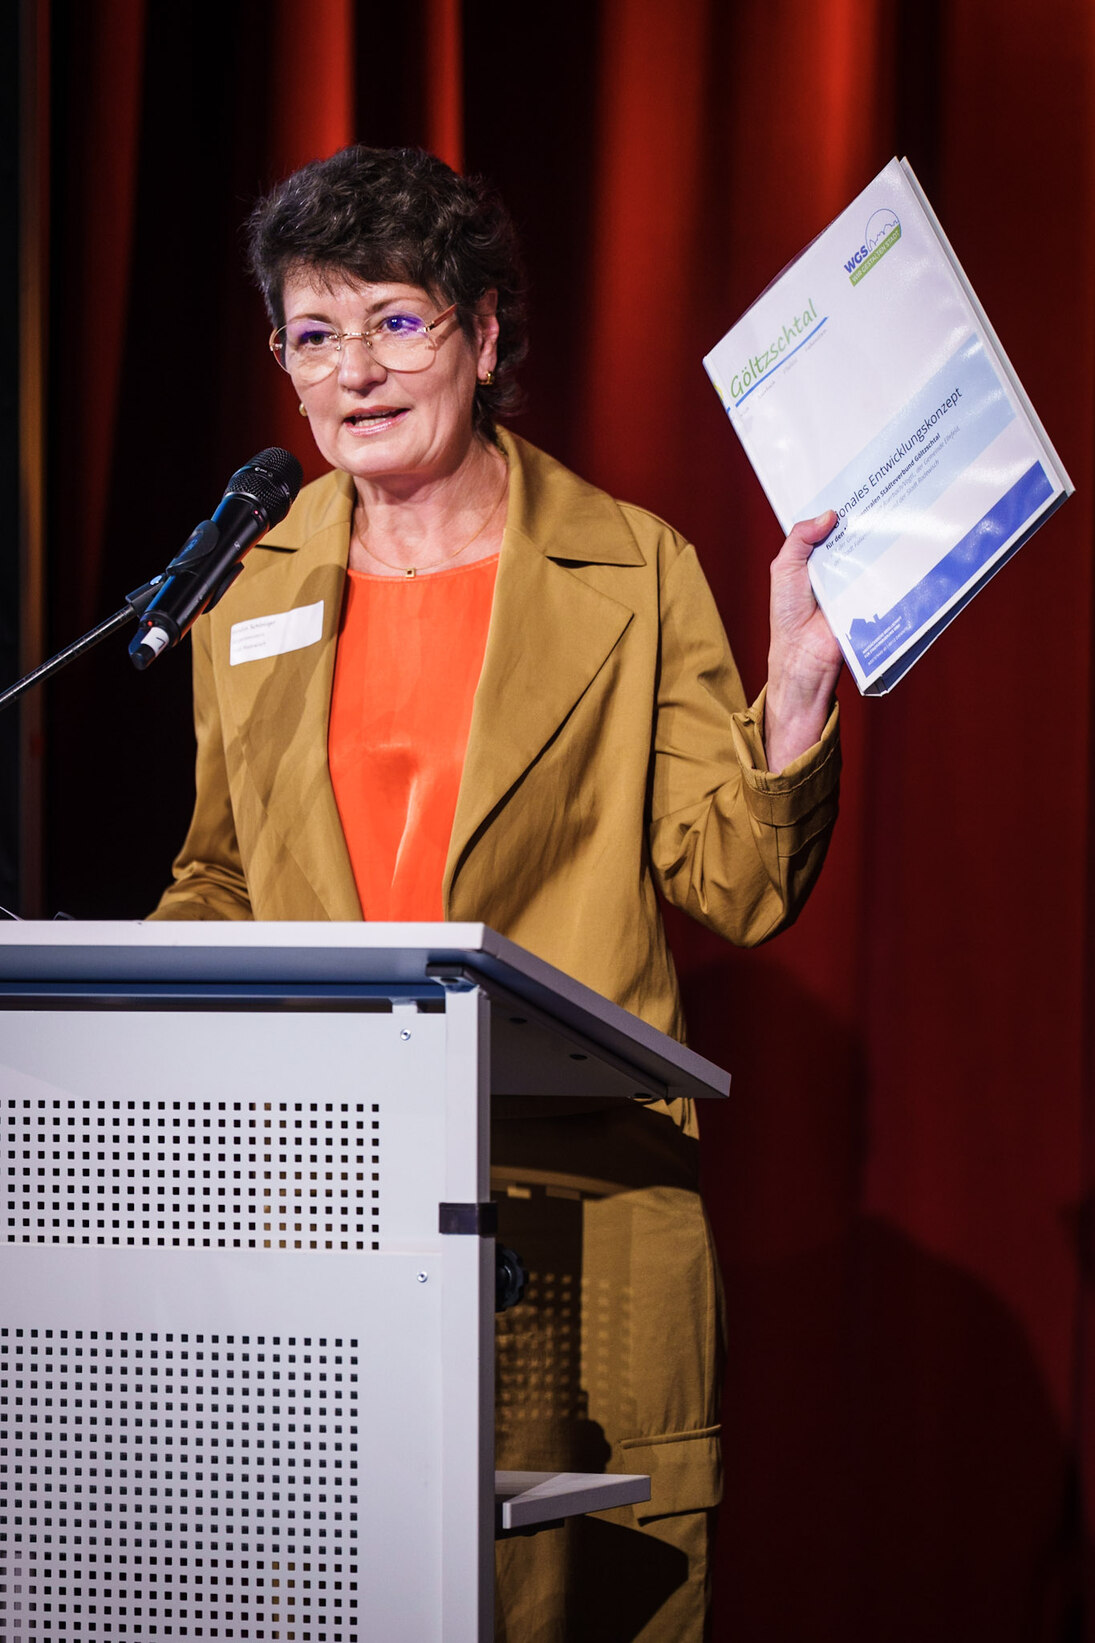 Kerstin Schöniger, Bürgermeisterin der Stadt Rodewisch, bei ihrem Vortrag zum Mittelzentralen Staädteverbund Göltzschtal